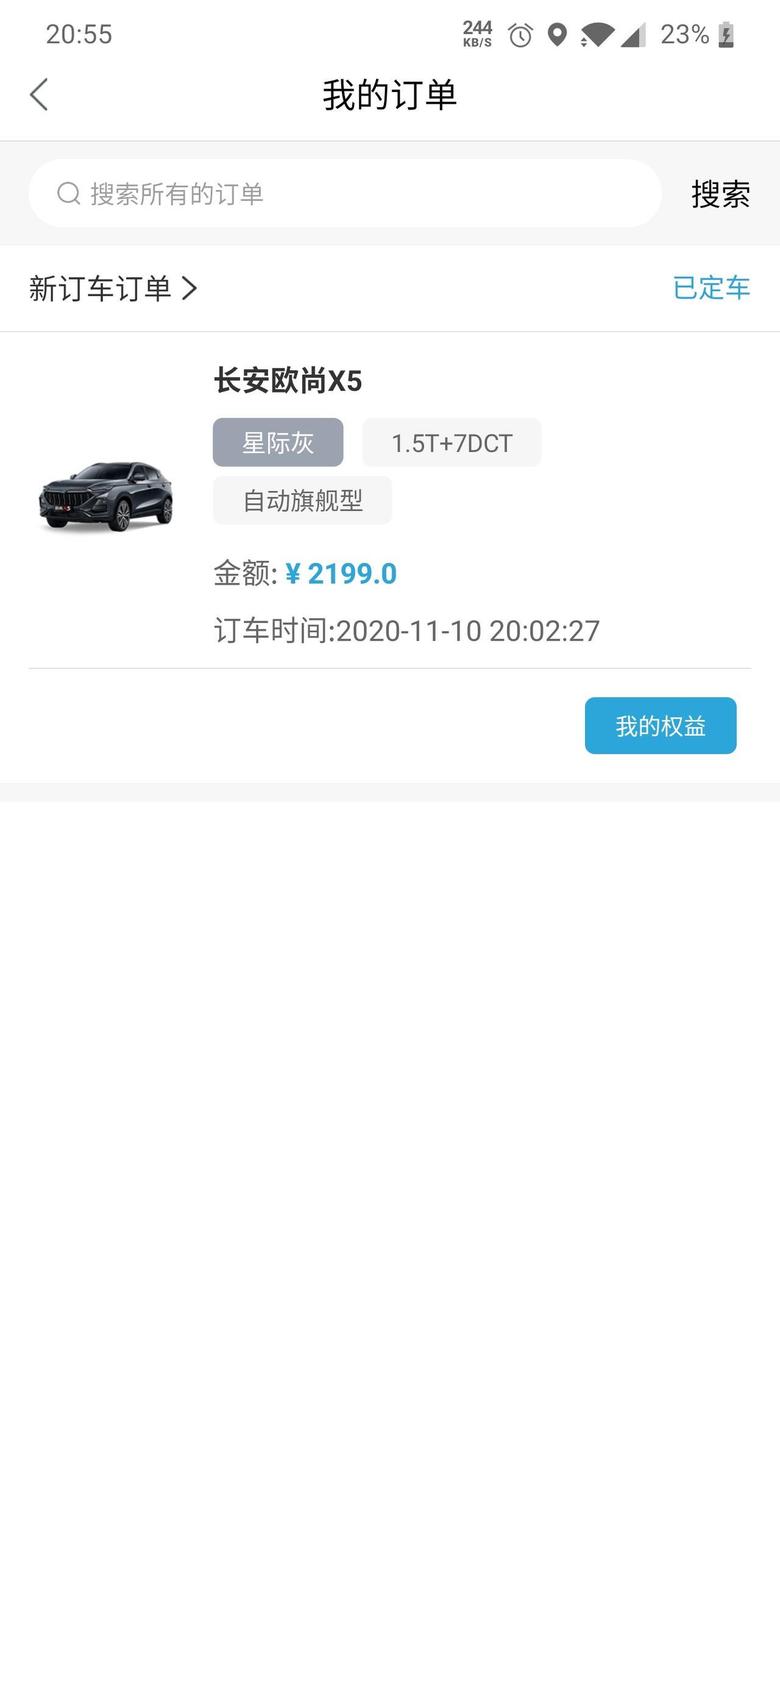 长安欧尚x5 4s销售跟我说加装的要12月份才生产不知道过年前能不能提车?